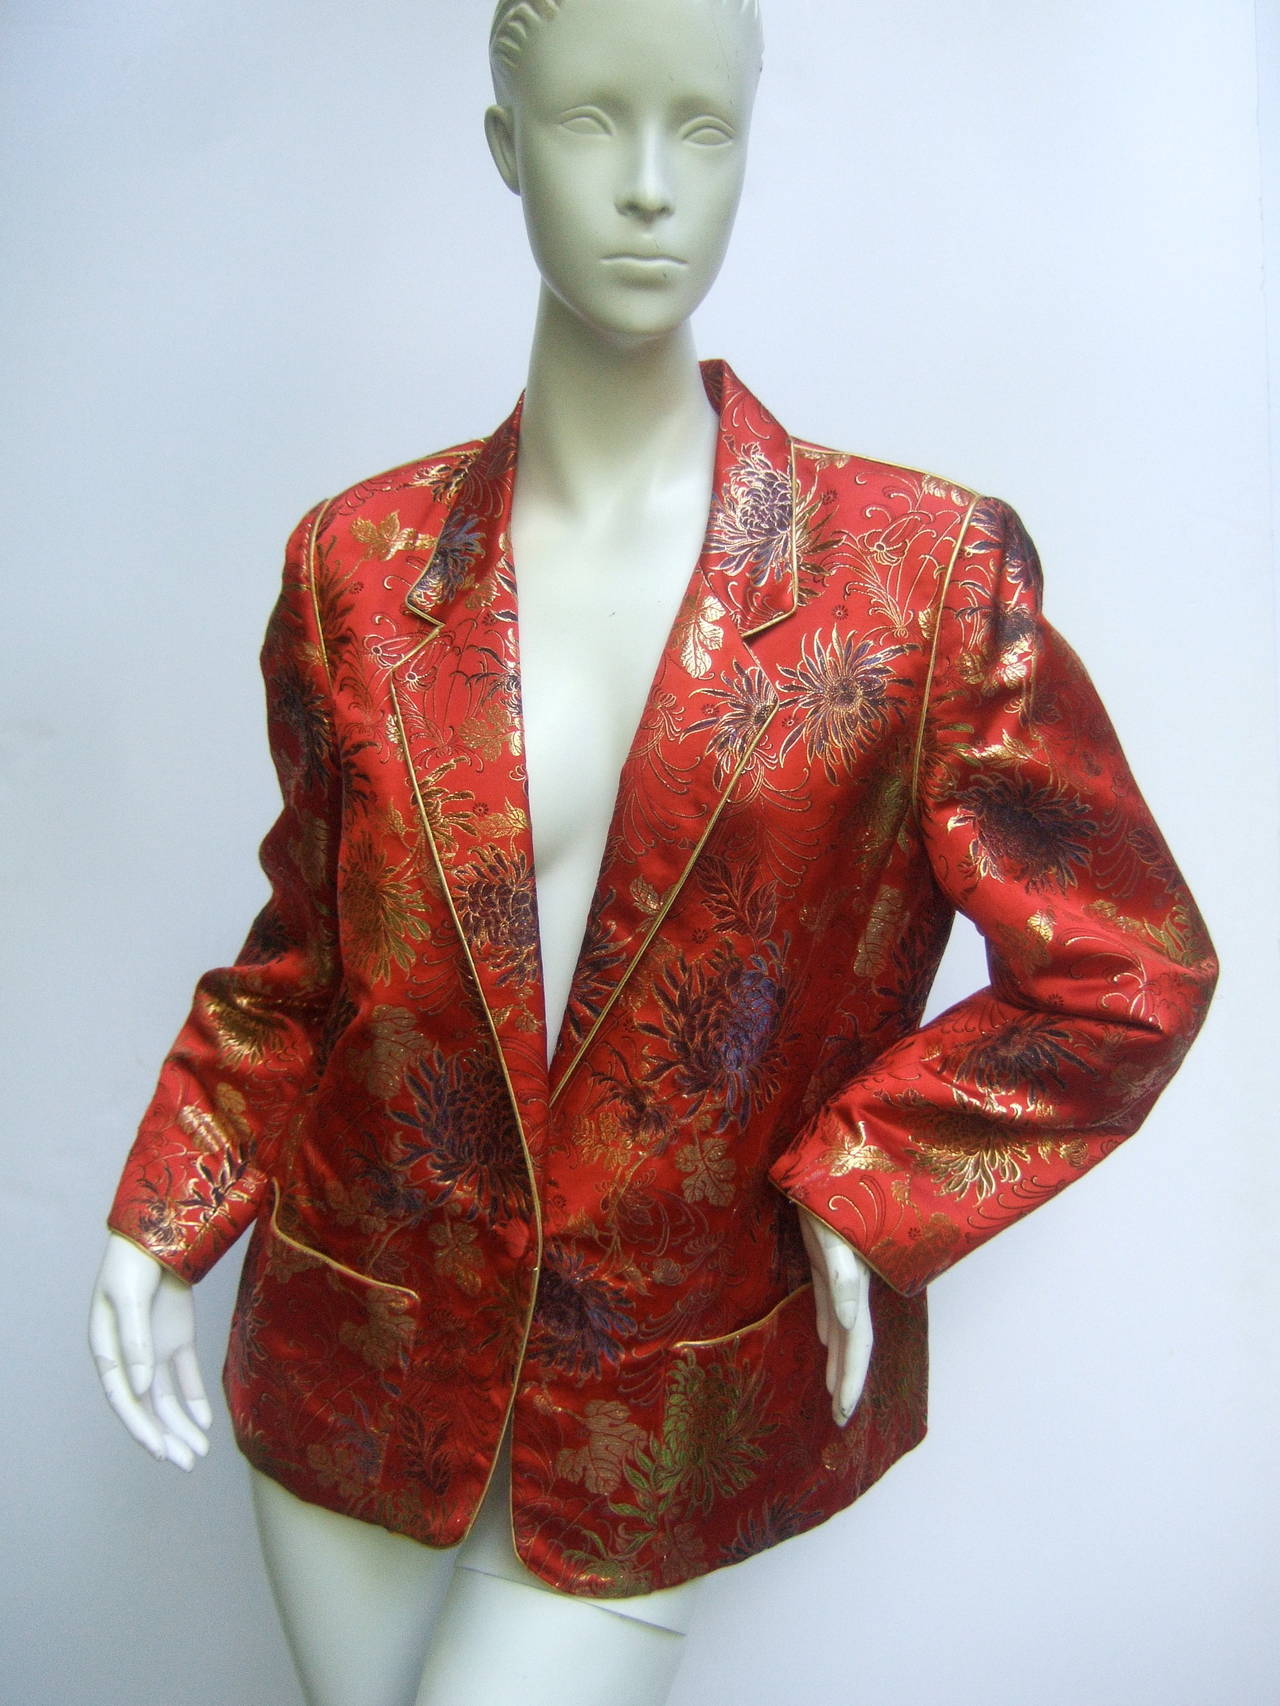 Veste exotique en brocart de chinoiserie écarlate c 1980
La luxueuse veste vintage est conçue avec des motifs lumineux
tissu brocart floral avec bordure passepoilée métallique dorée qui
encadre les revers, les poignets et les poches

Le champ